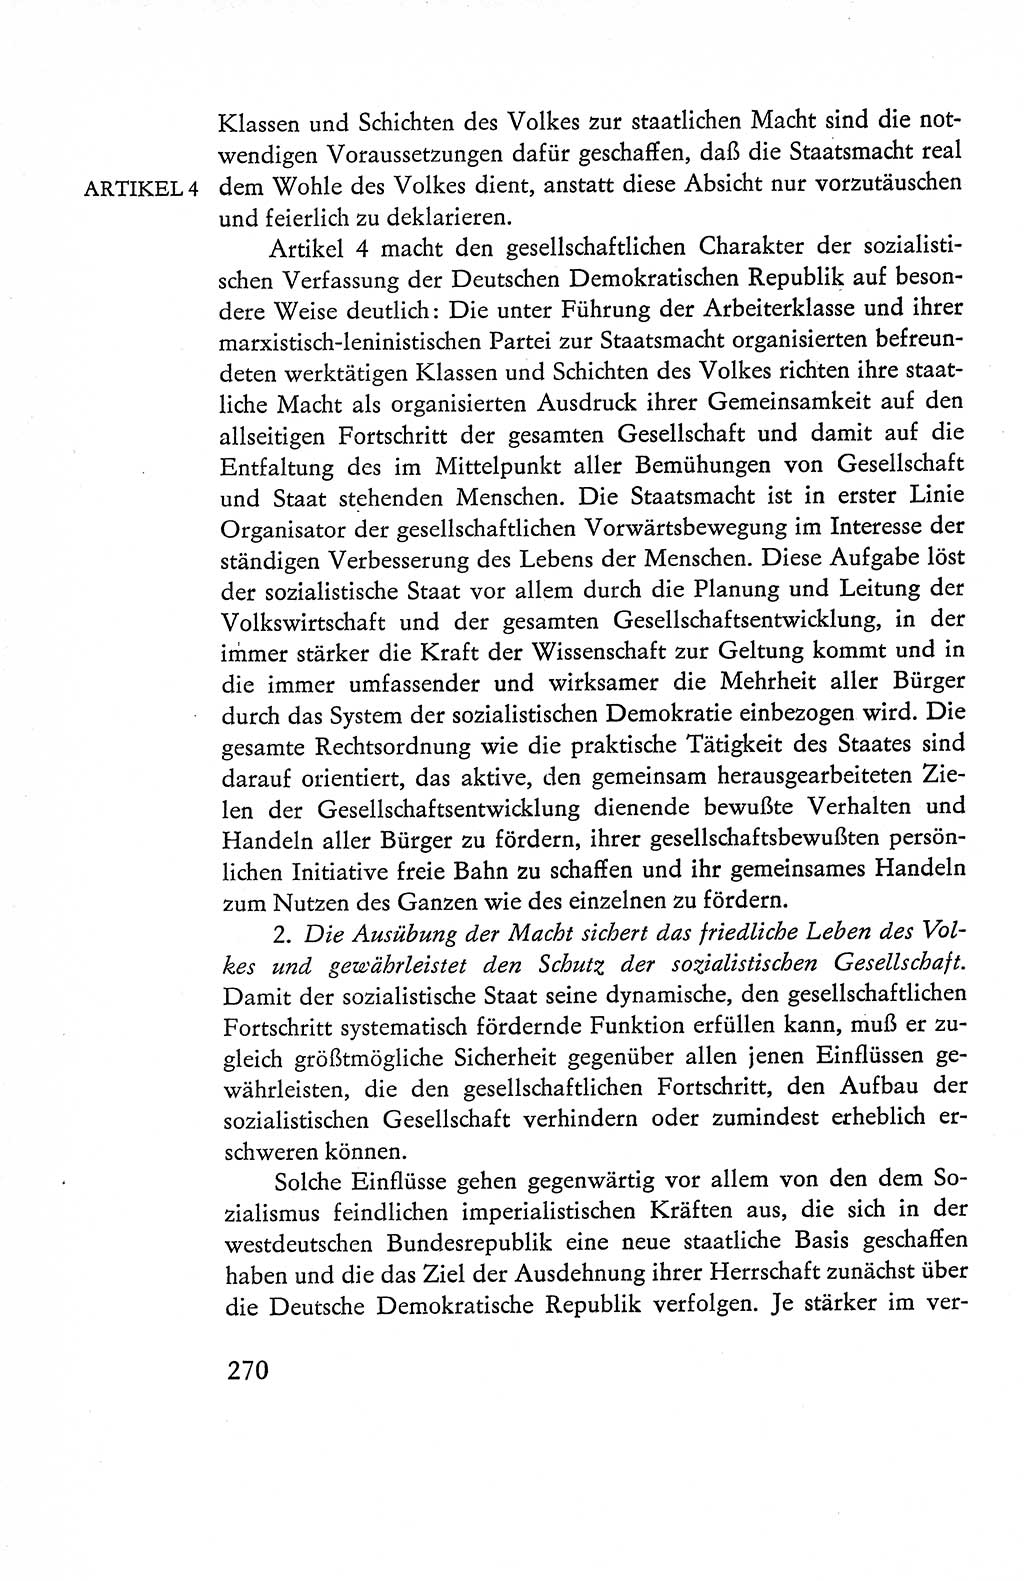 Verfassung der Deutschen Demokratischen Republik (DDR), Dokumente, Kommentar 1969, Band 1, Seite 270 (Verf. DDR Dok. Komm. 1969, Bd. 1, S. 270)